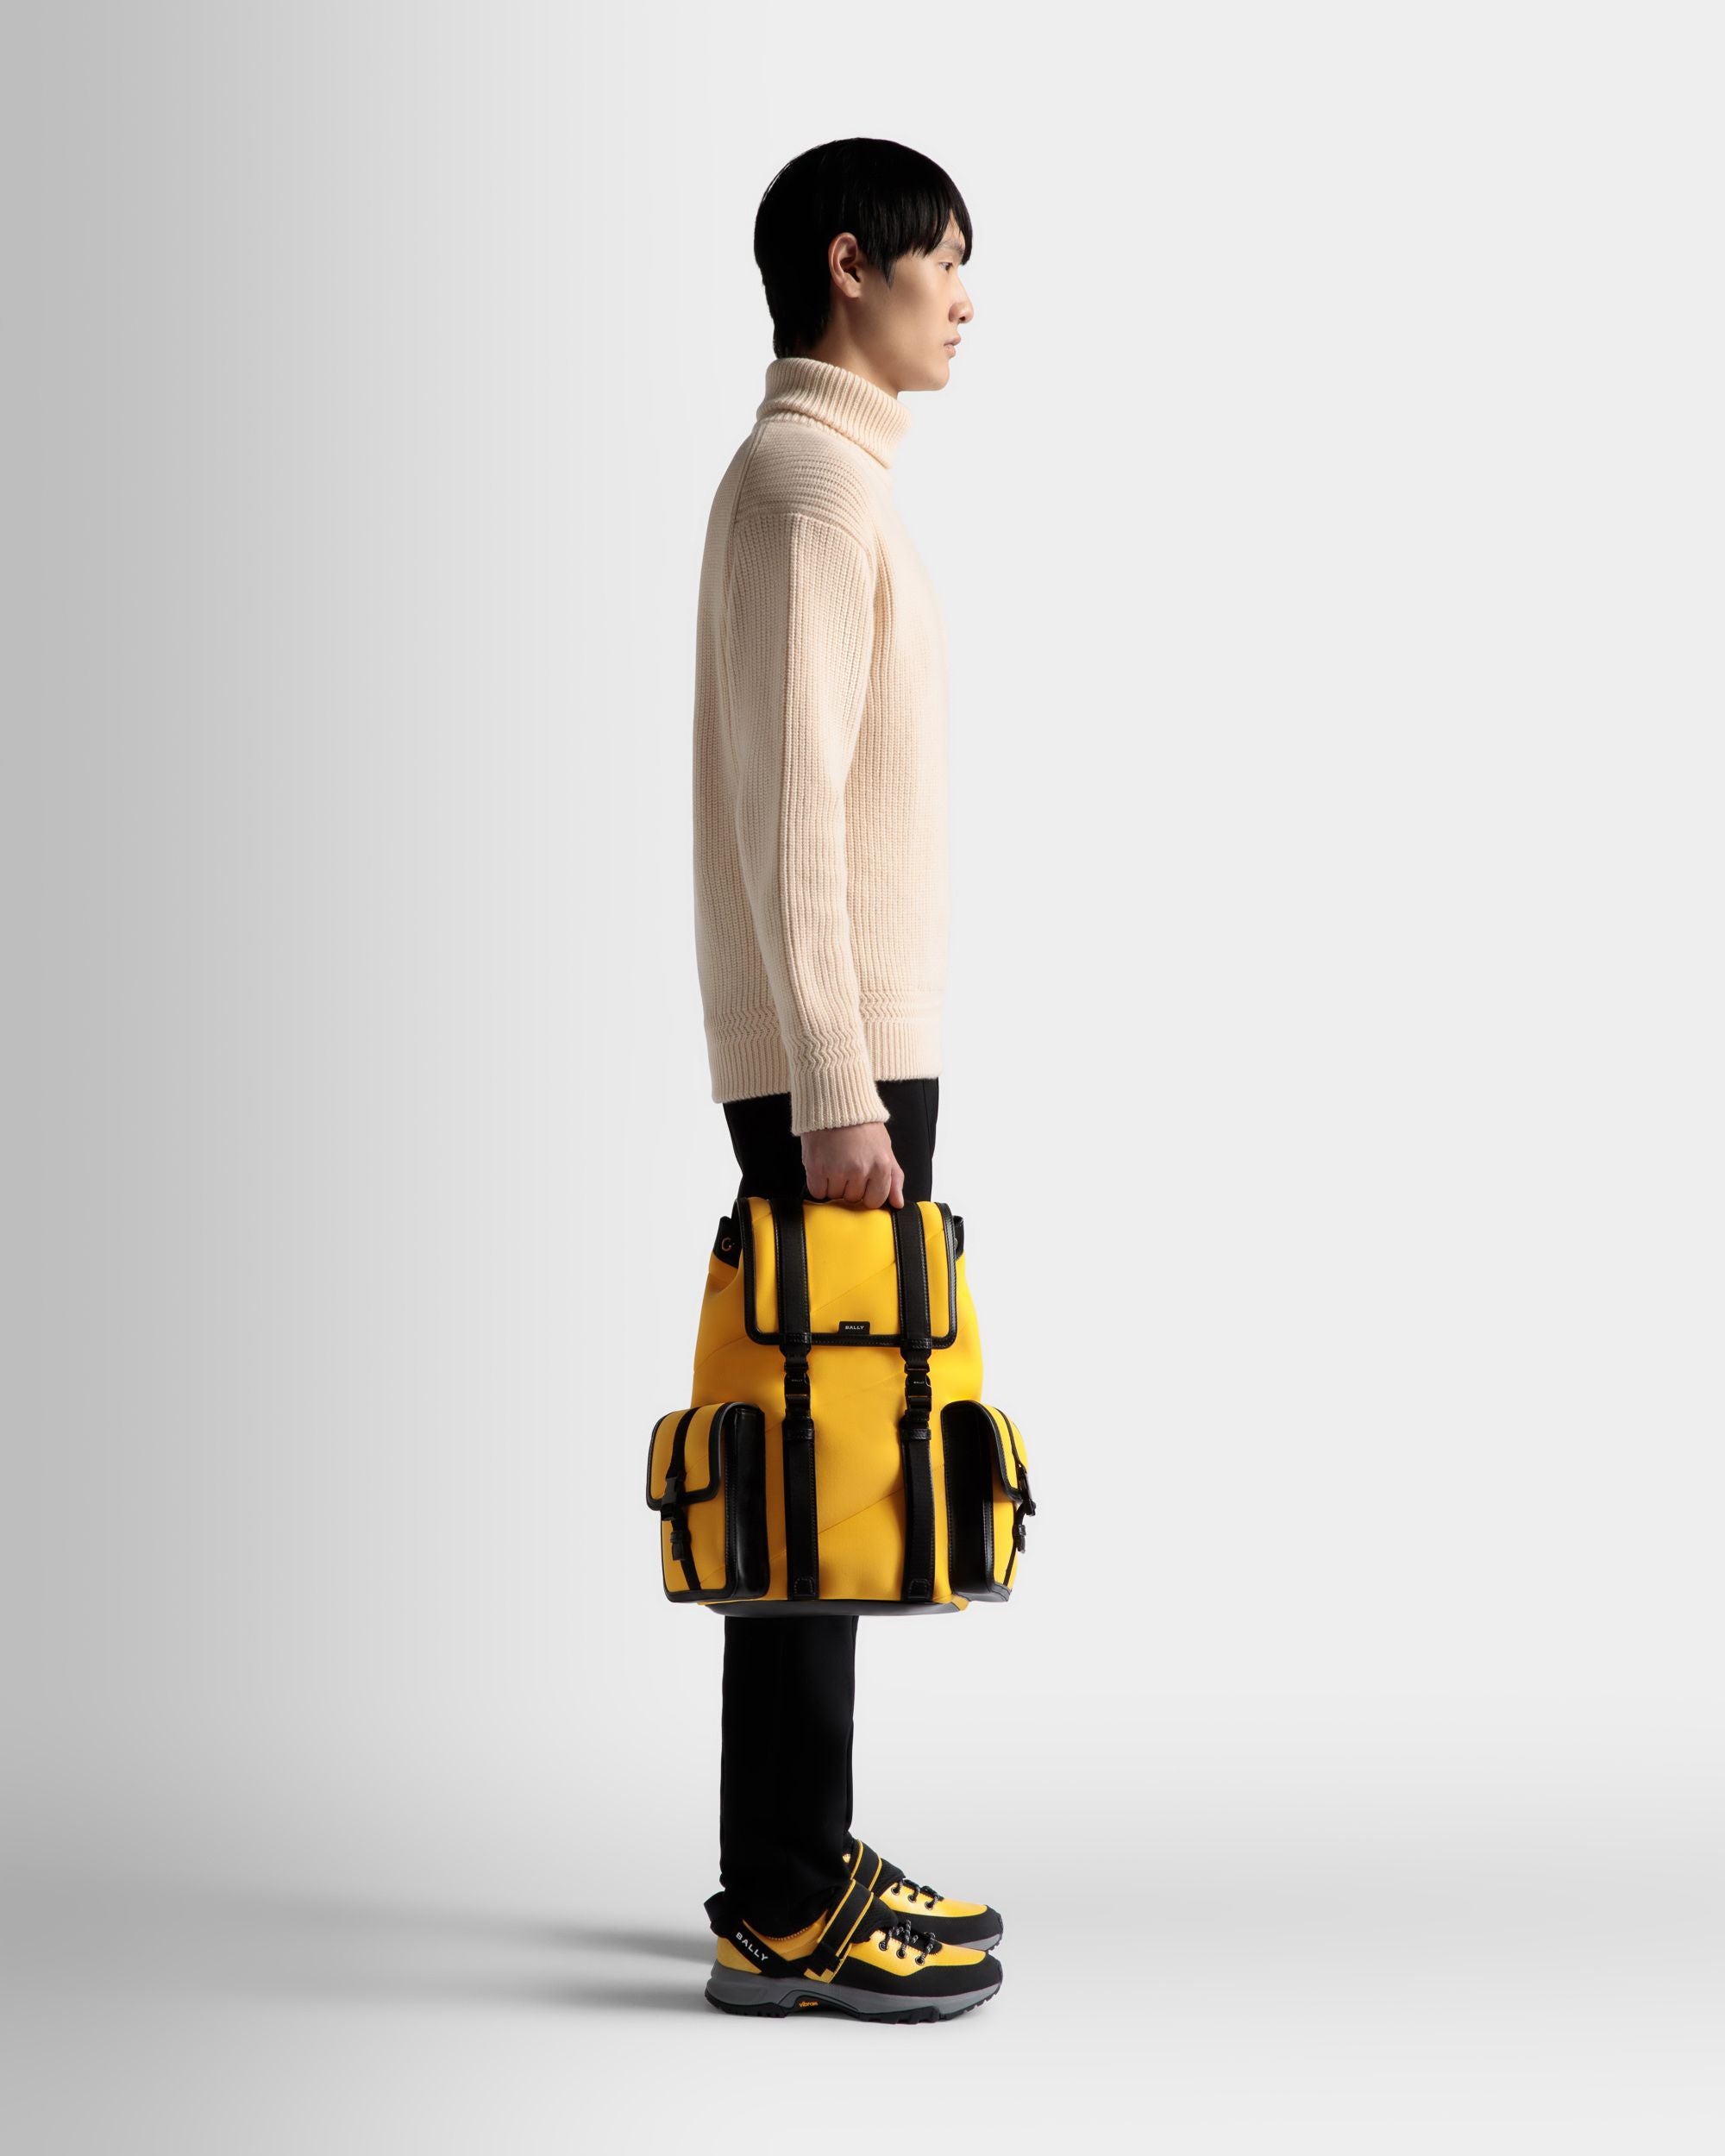 Mountain | Men's Backpack in Yellow Neoprene | Bally | On Model Front